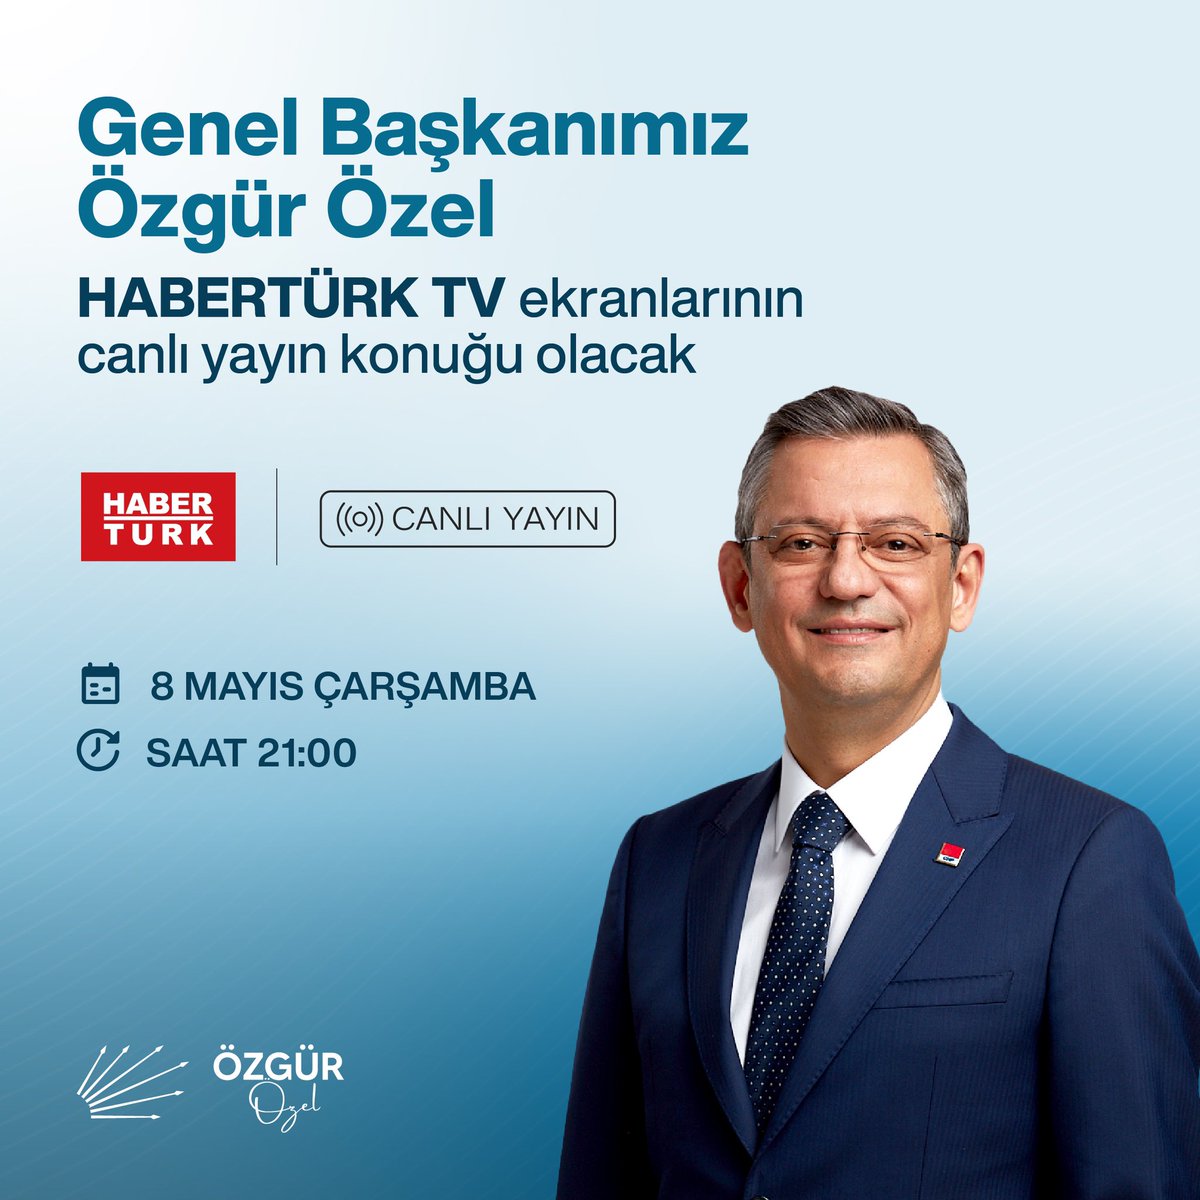 Genel Başkanımız Özgür Özel, bu akşam HaberTürk TV'de gazetecilerin sorularını yanıtlayacak. 🗓️8 Mayıs Çarşamba ⏰21.00